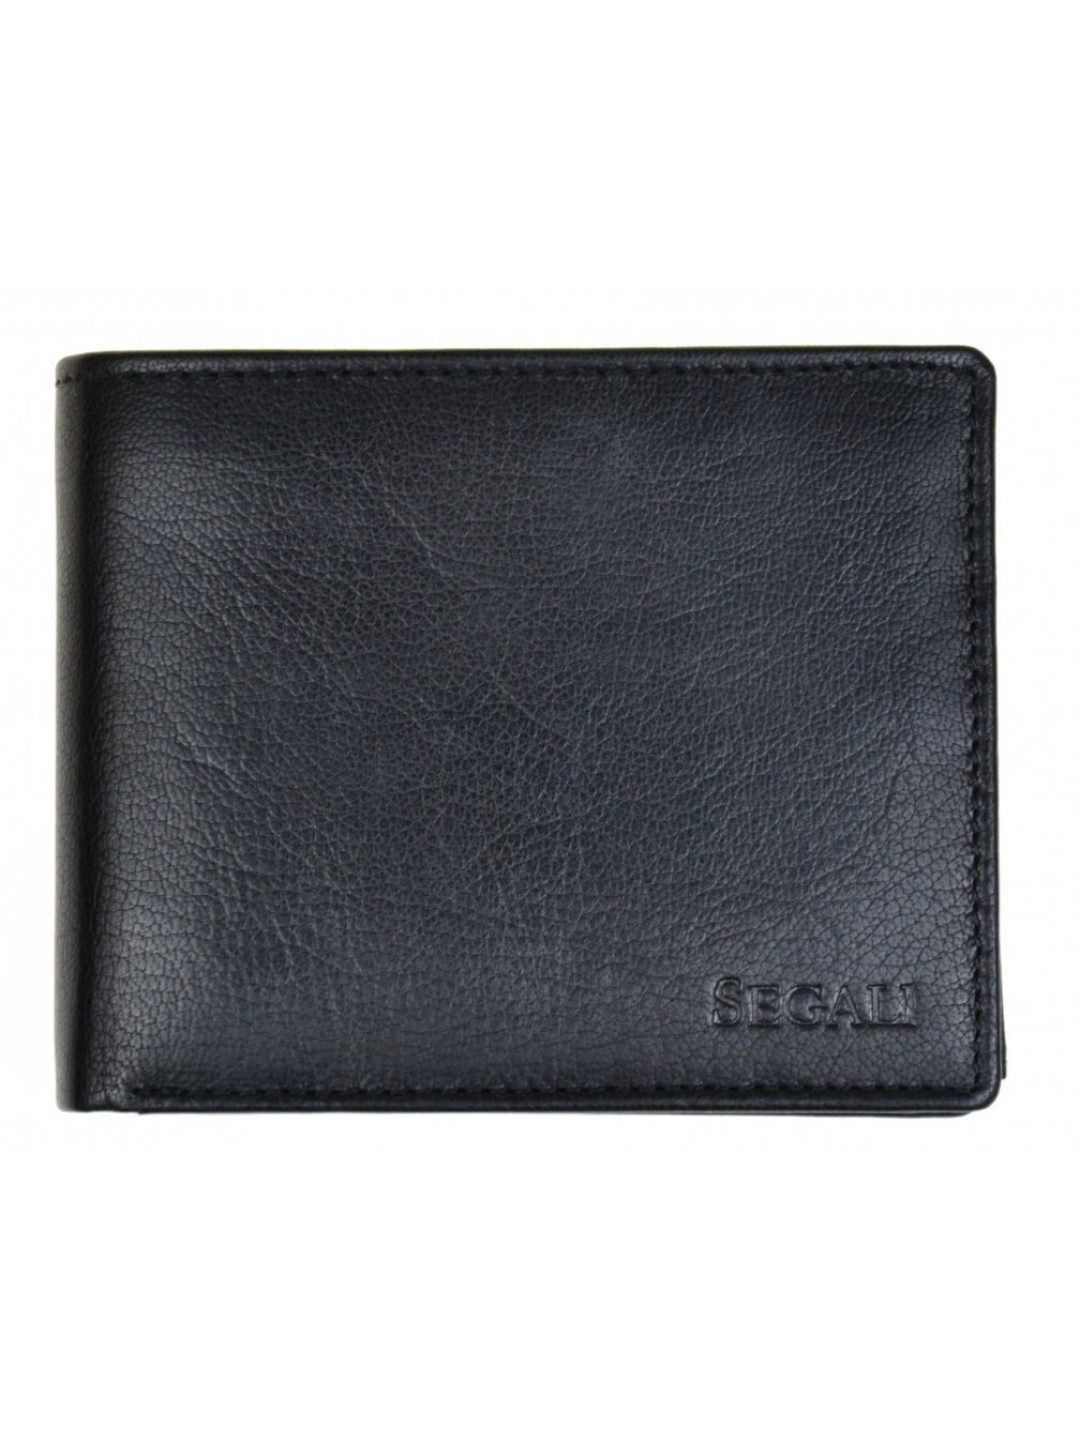 SEGALI Pánská kožená peněženka 7265 black